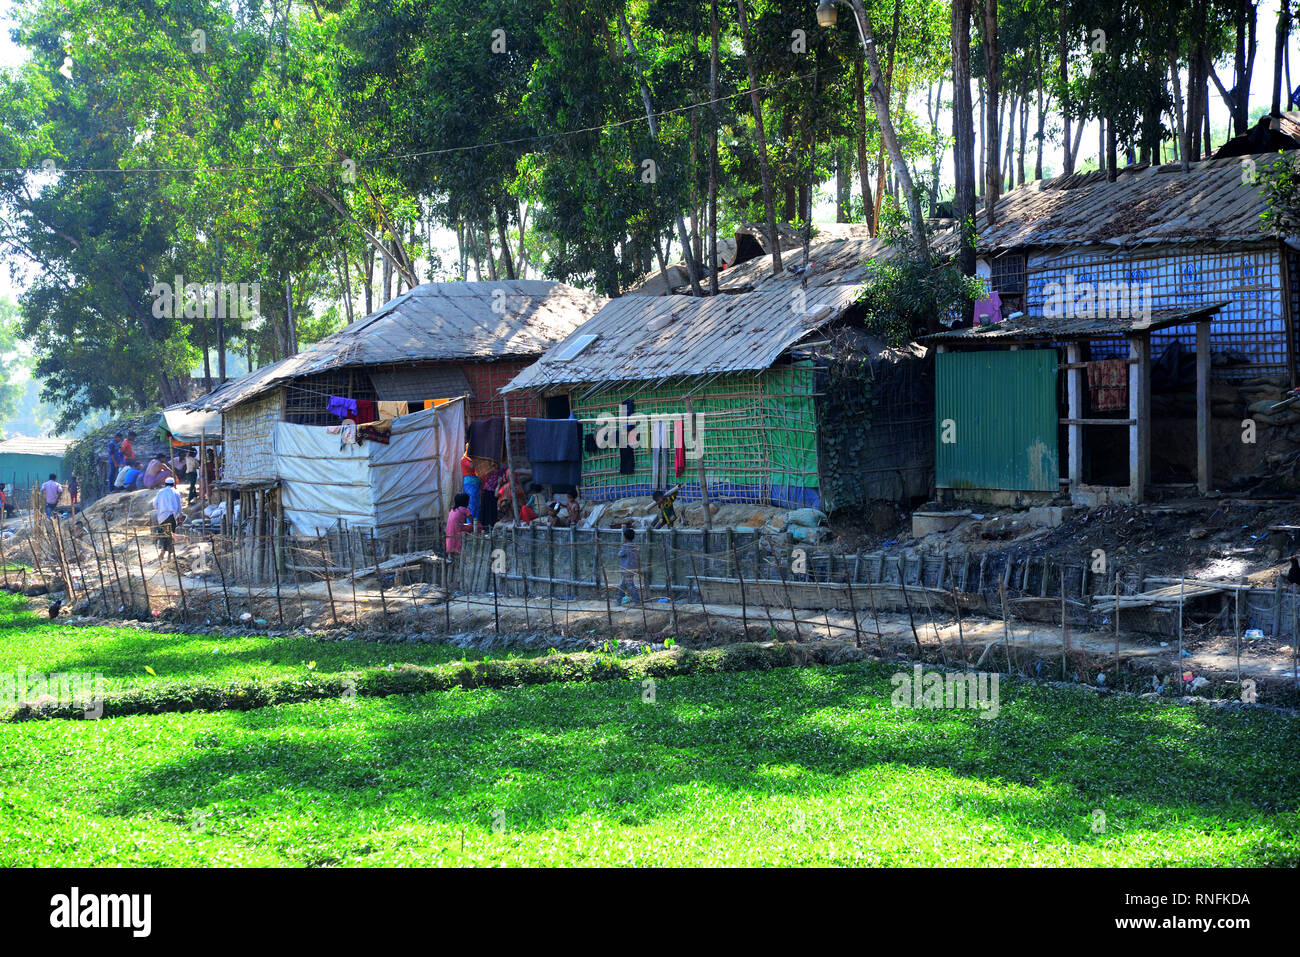 A view of Balukhali rohingya refugee camp in Ukhia, Cox's Bazar, Bangladesh. On February 02, 2019 Stock Photo